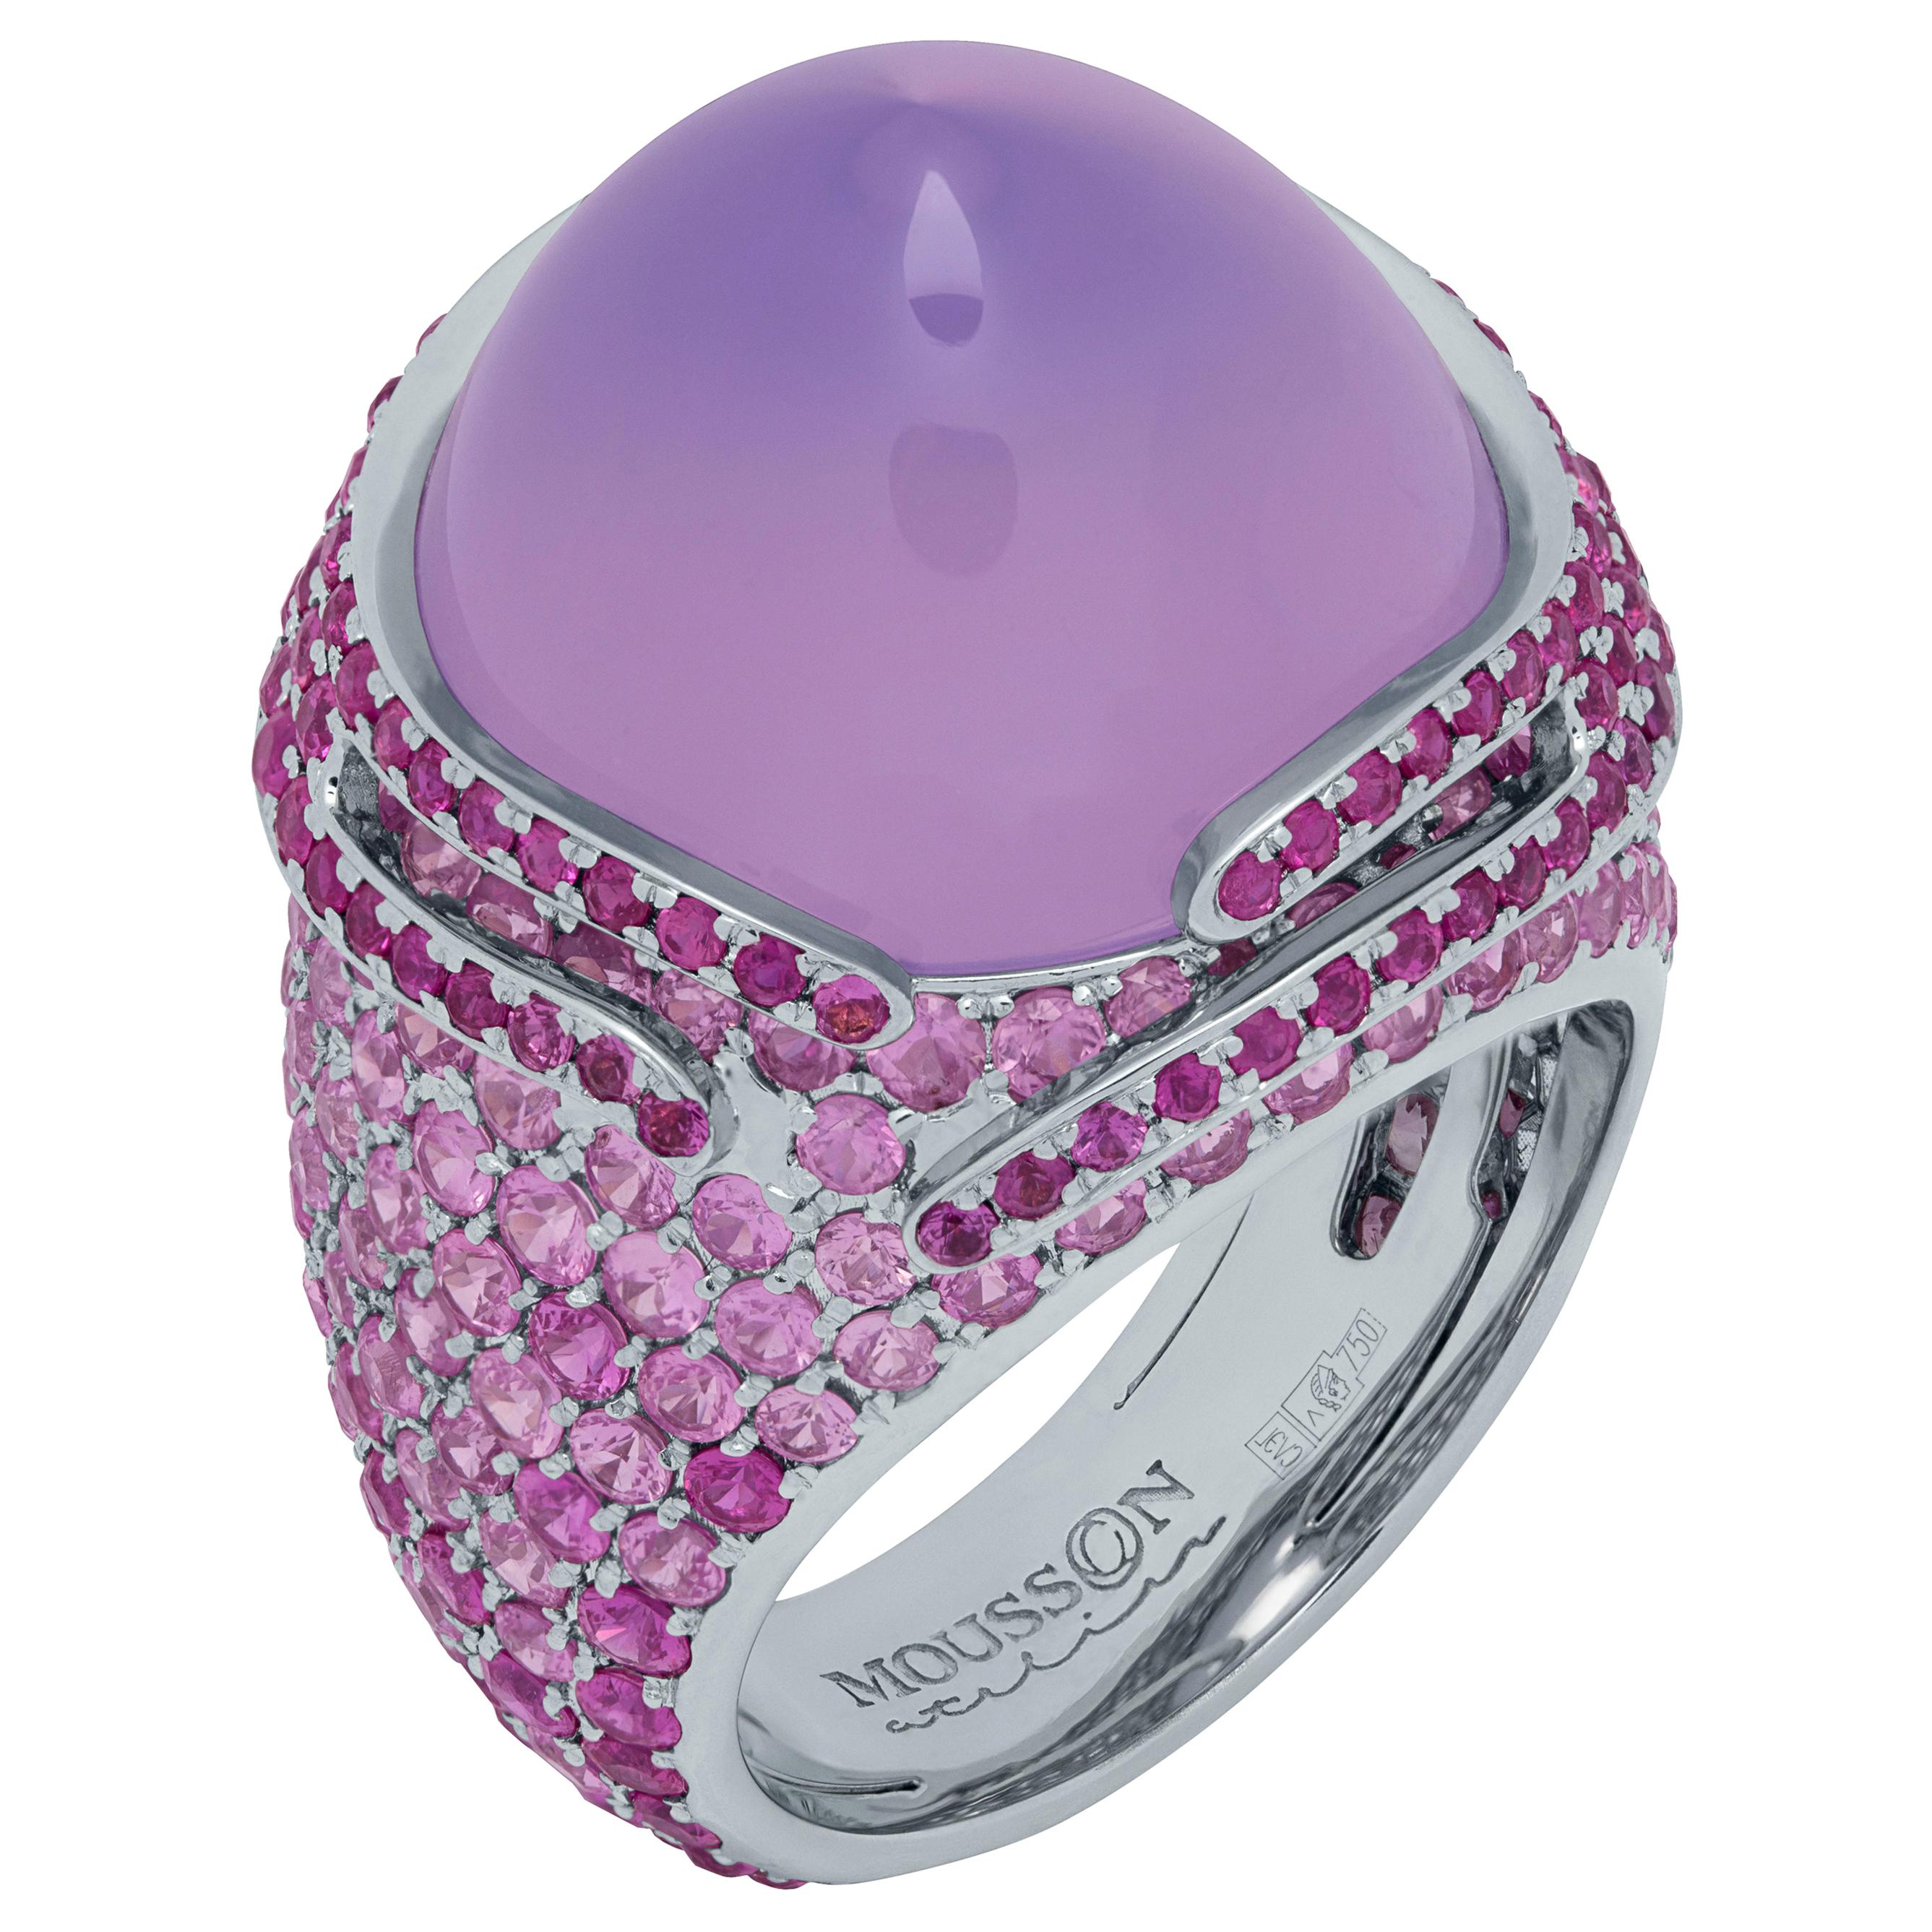 Lavender Quartz 25.63 Carat Pink Sapphires 18 Karat White Gold Fuji Ring